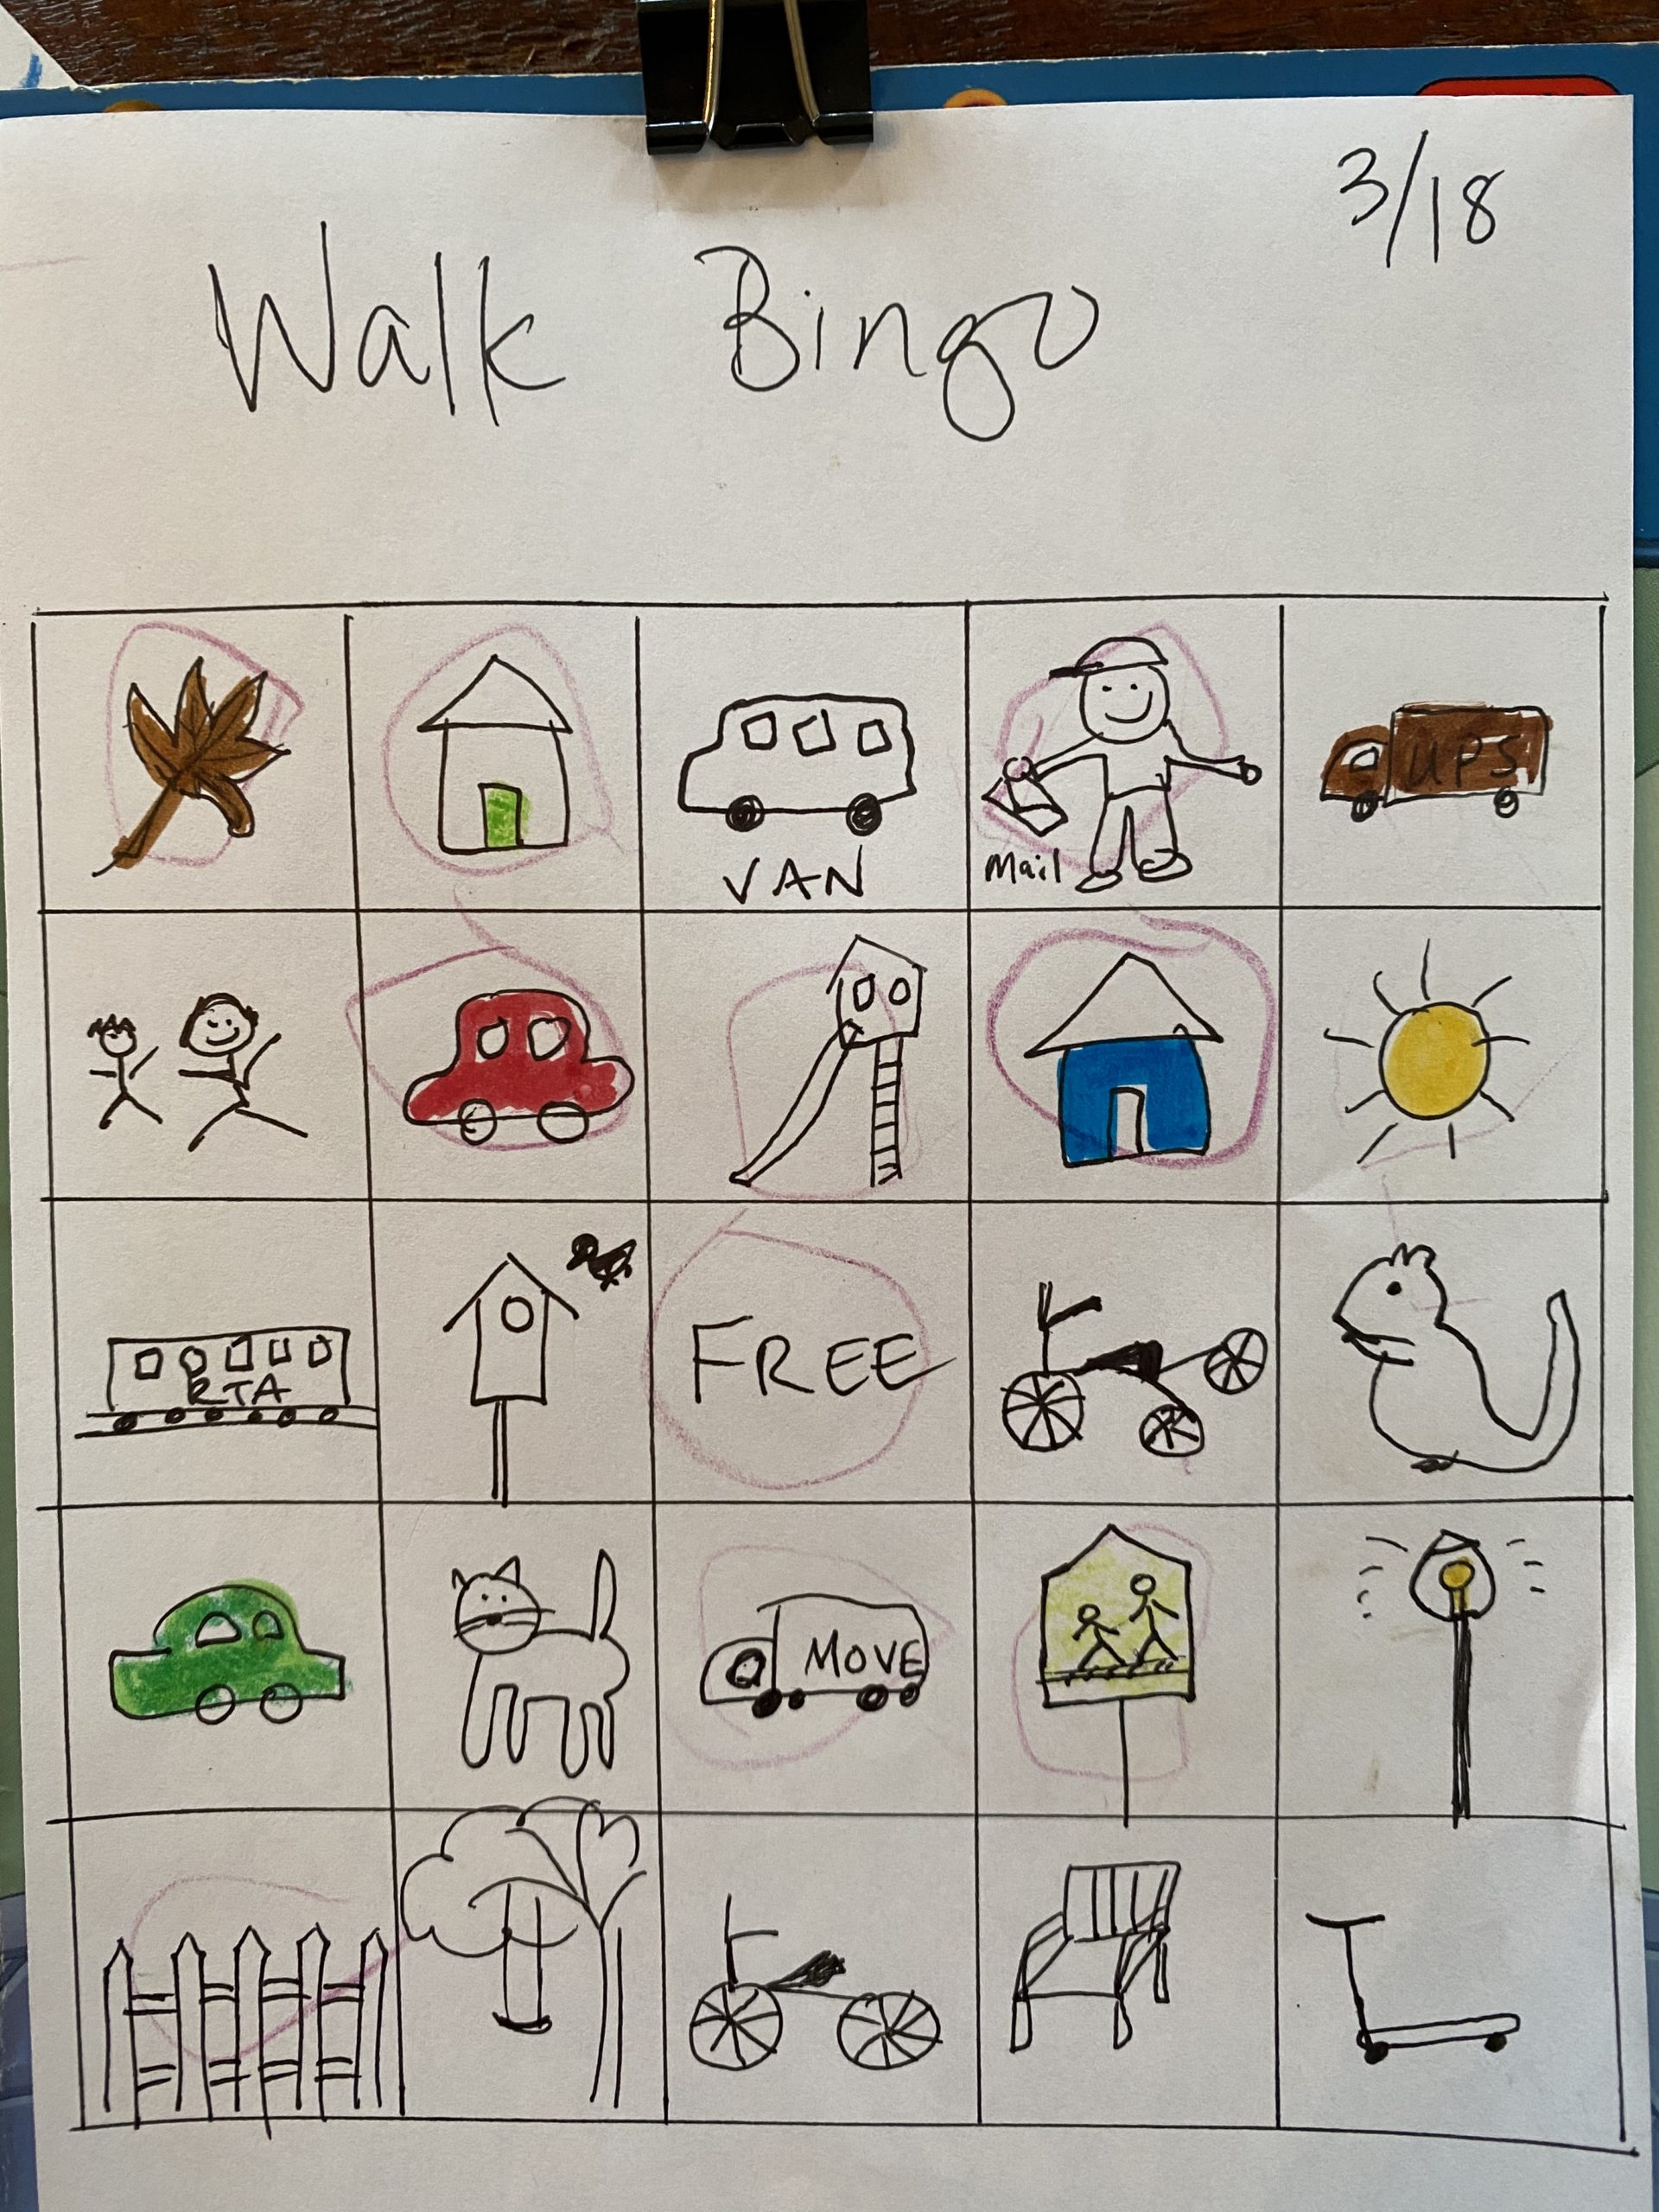 A bingo board showing neighborhood objects